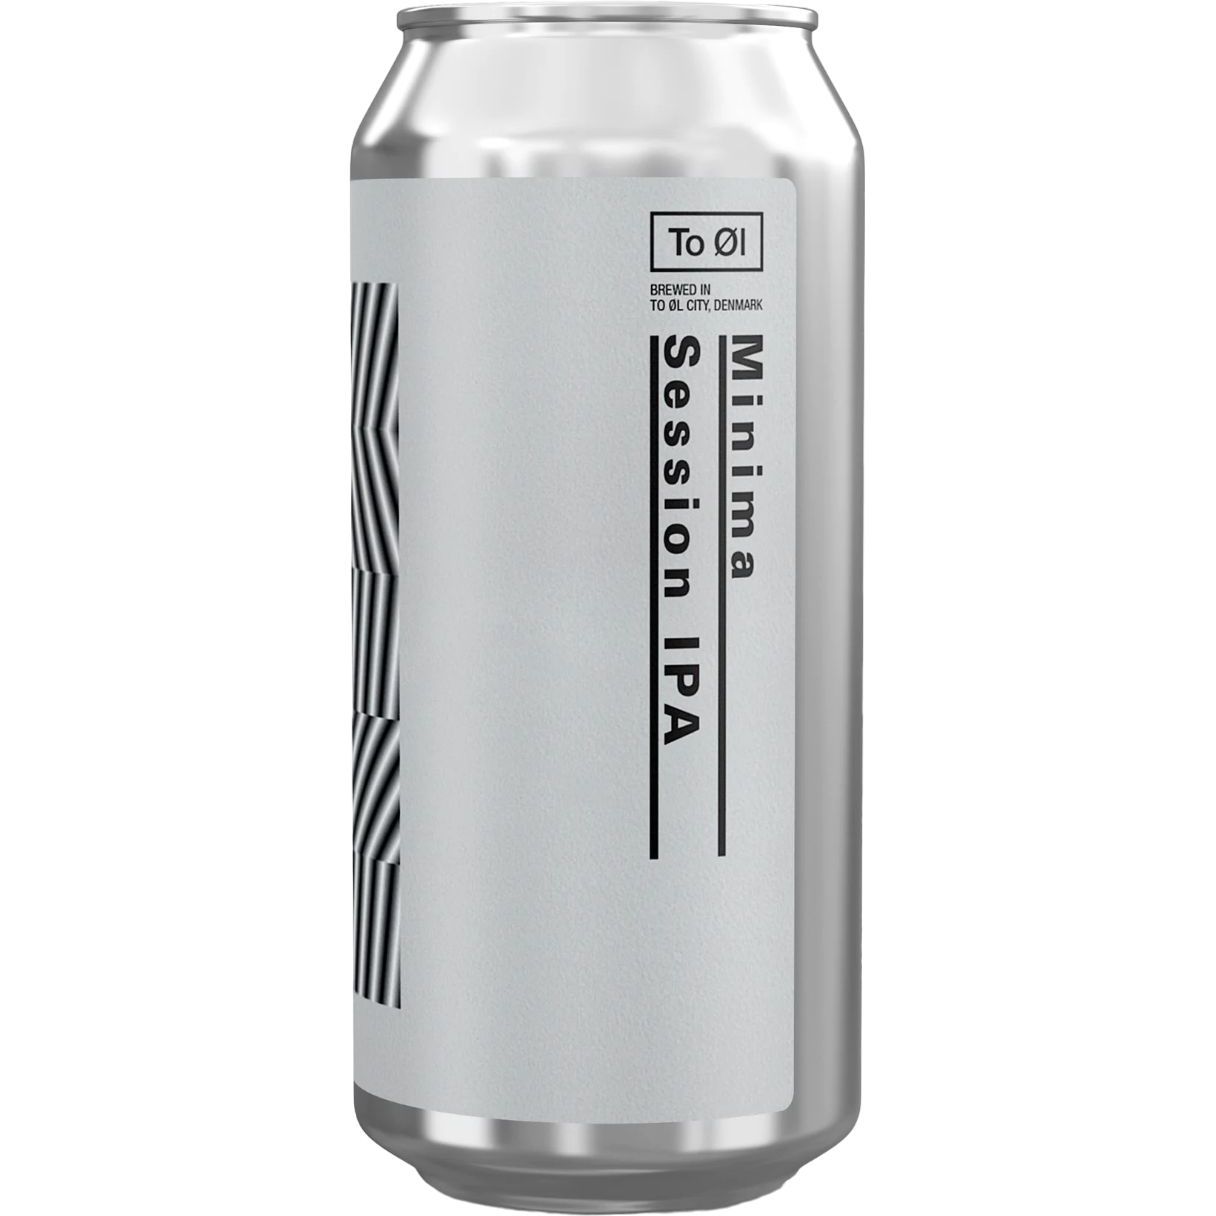 Пиво To ØI Minima светлое 4.7% 0.44 л ж/б - фото 1